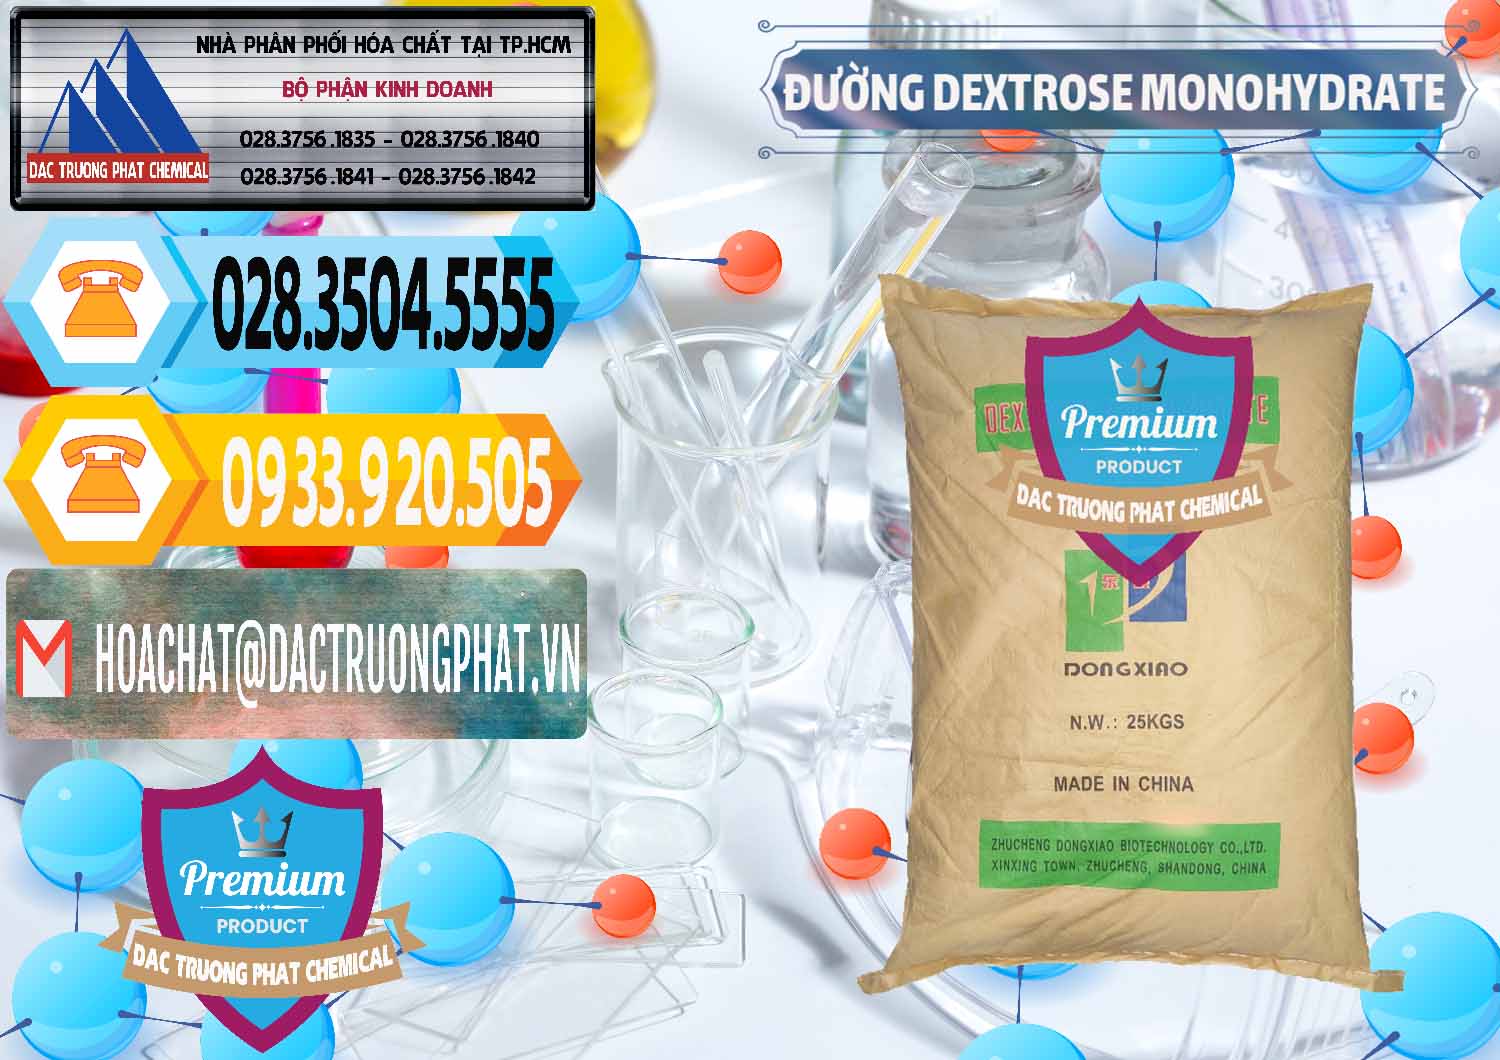 Chuyên kinh doanh _ bán Đường Dextrose Monohydrate Food Grade Dongxiao Trung Quốc China - 0063 - Cty cung cấp ( phân phối ) hóa chất tại TP.HCM - hoachattayrua.net